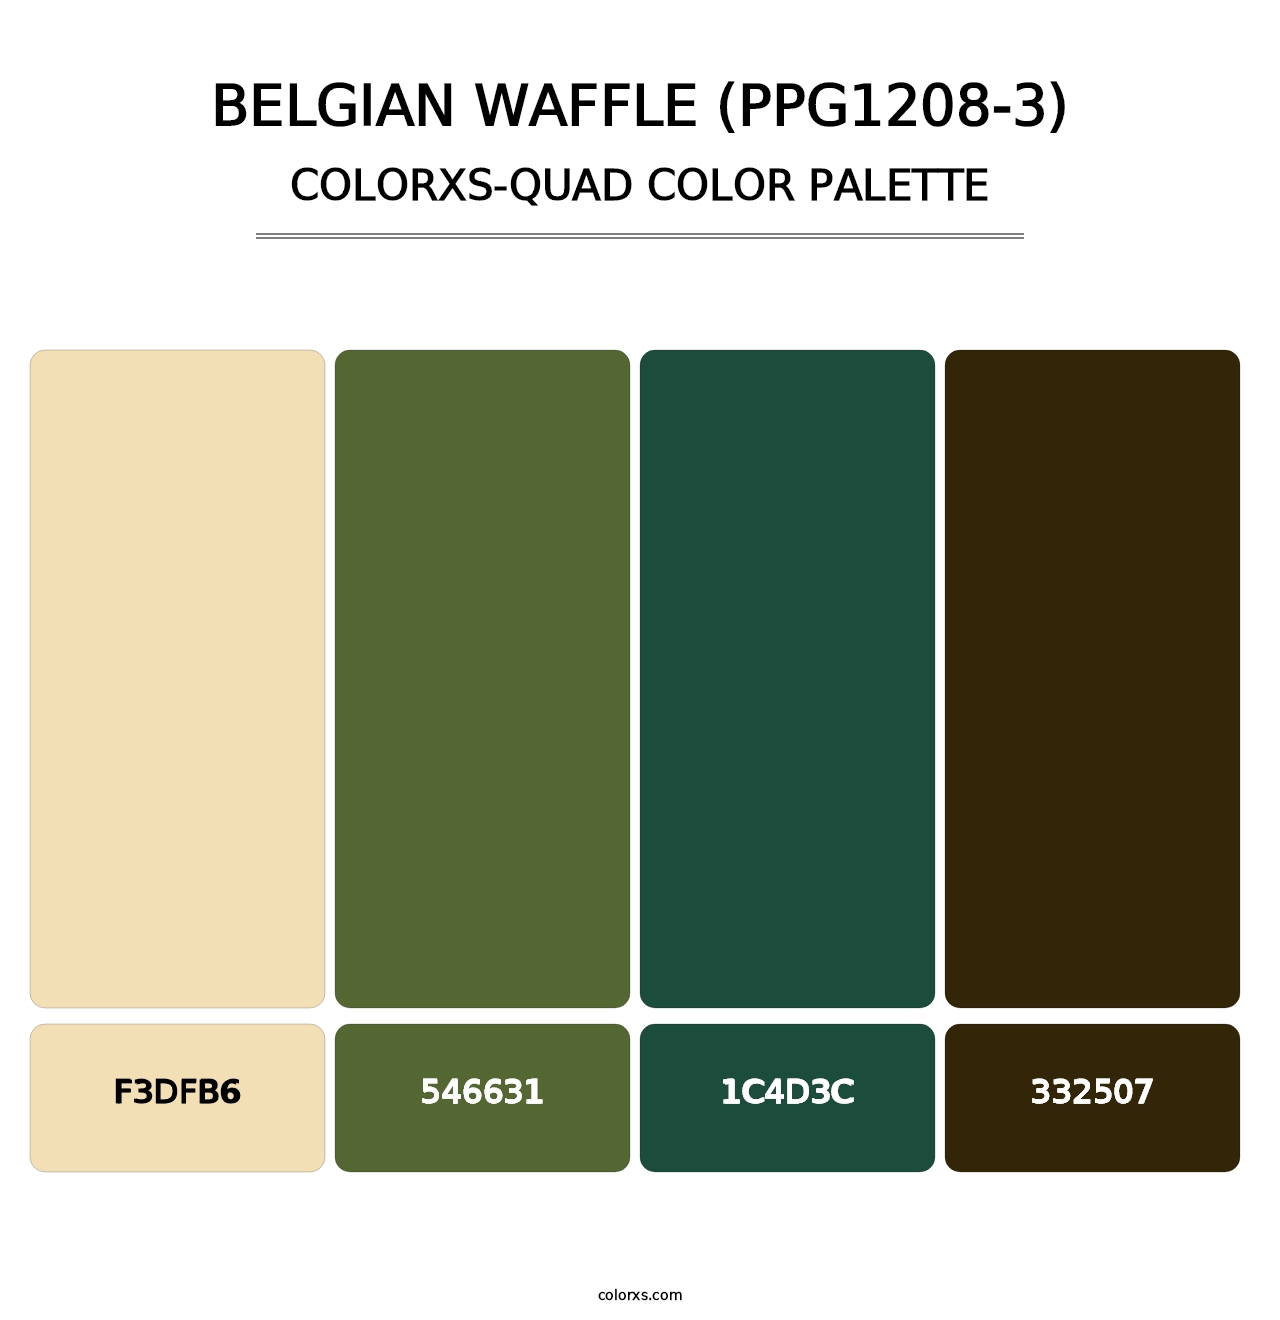 Belgian Waffle (PPG1208-3) - Colorxs Quad Palette